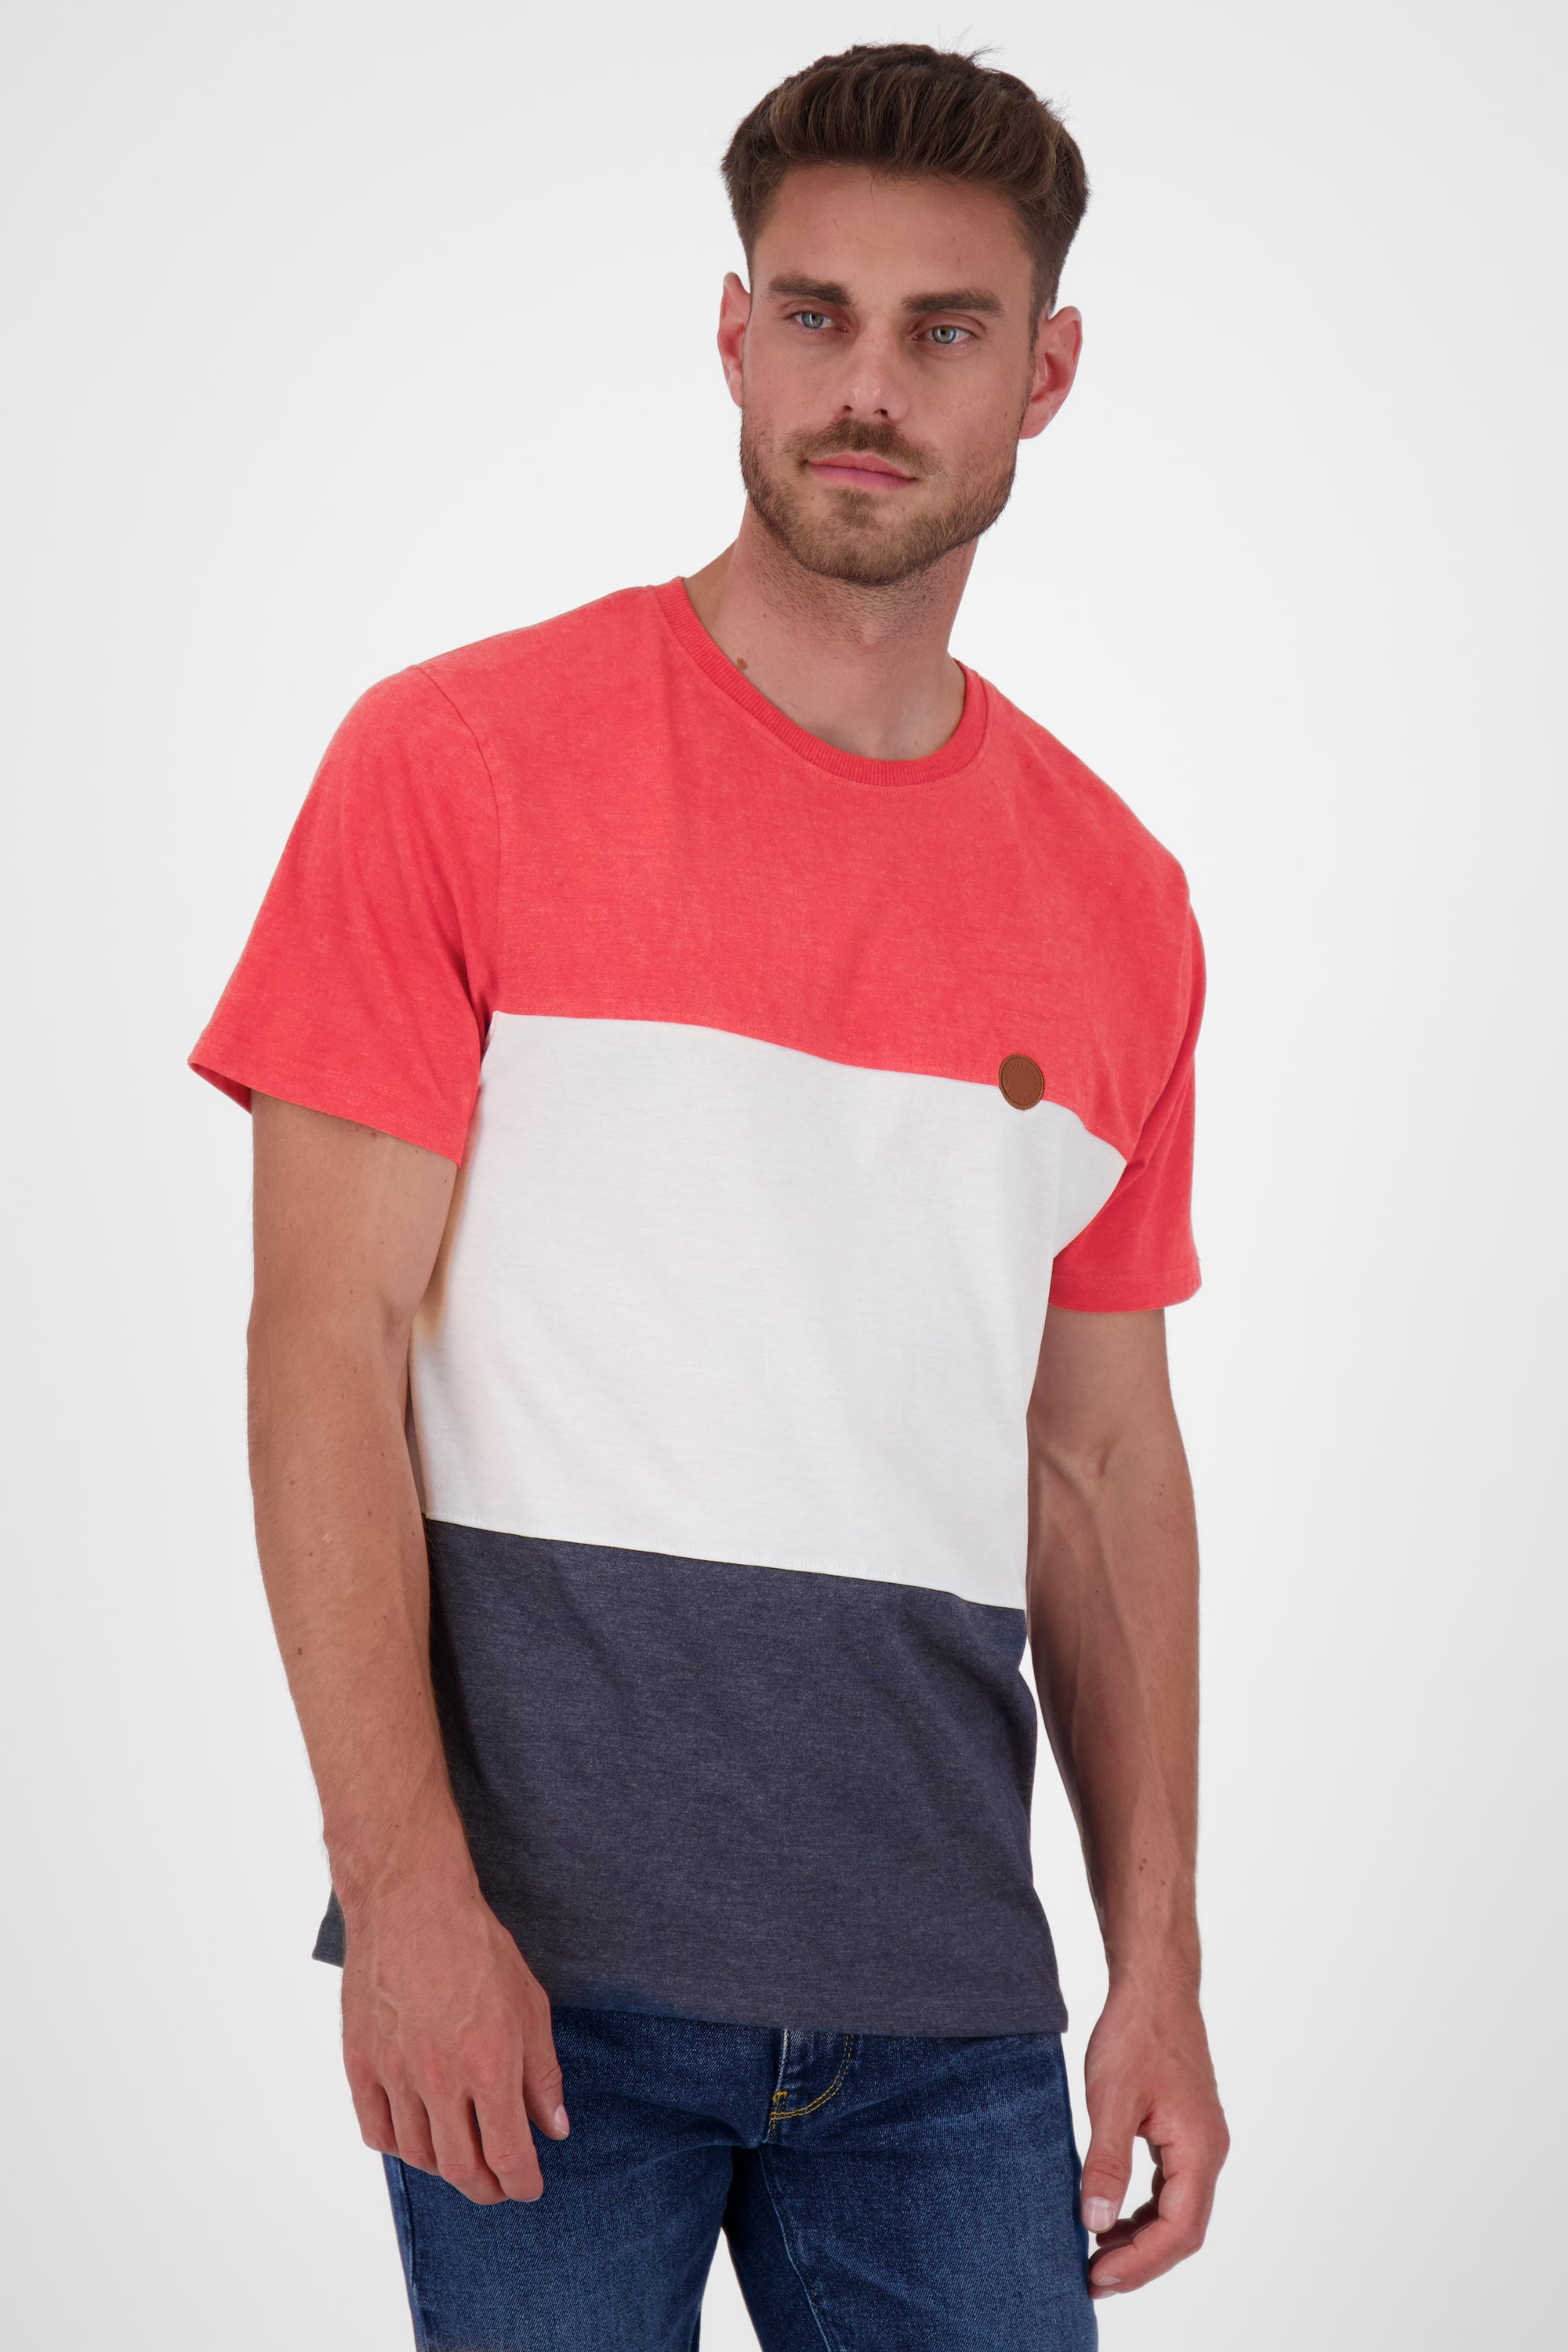 BenAK A T-Shirt Herren mit Colorblock Dunkelblau